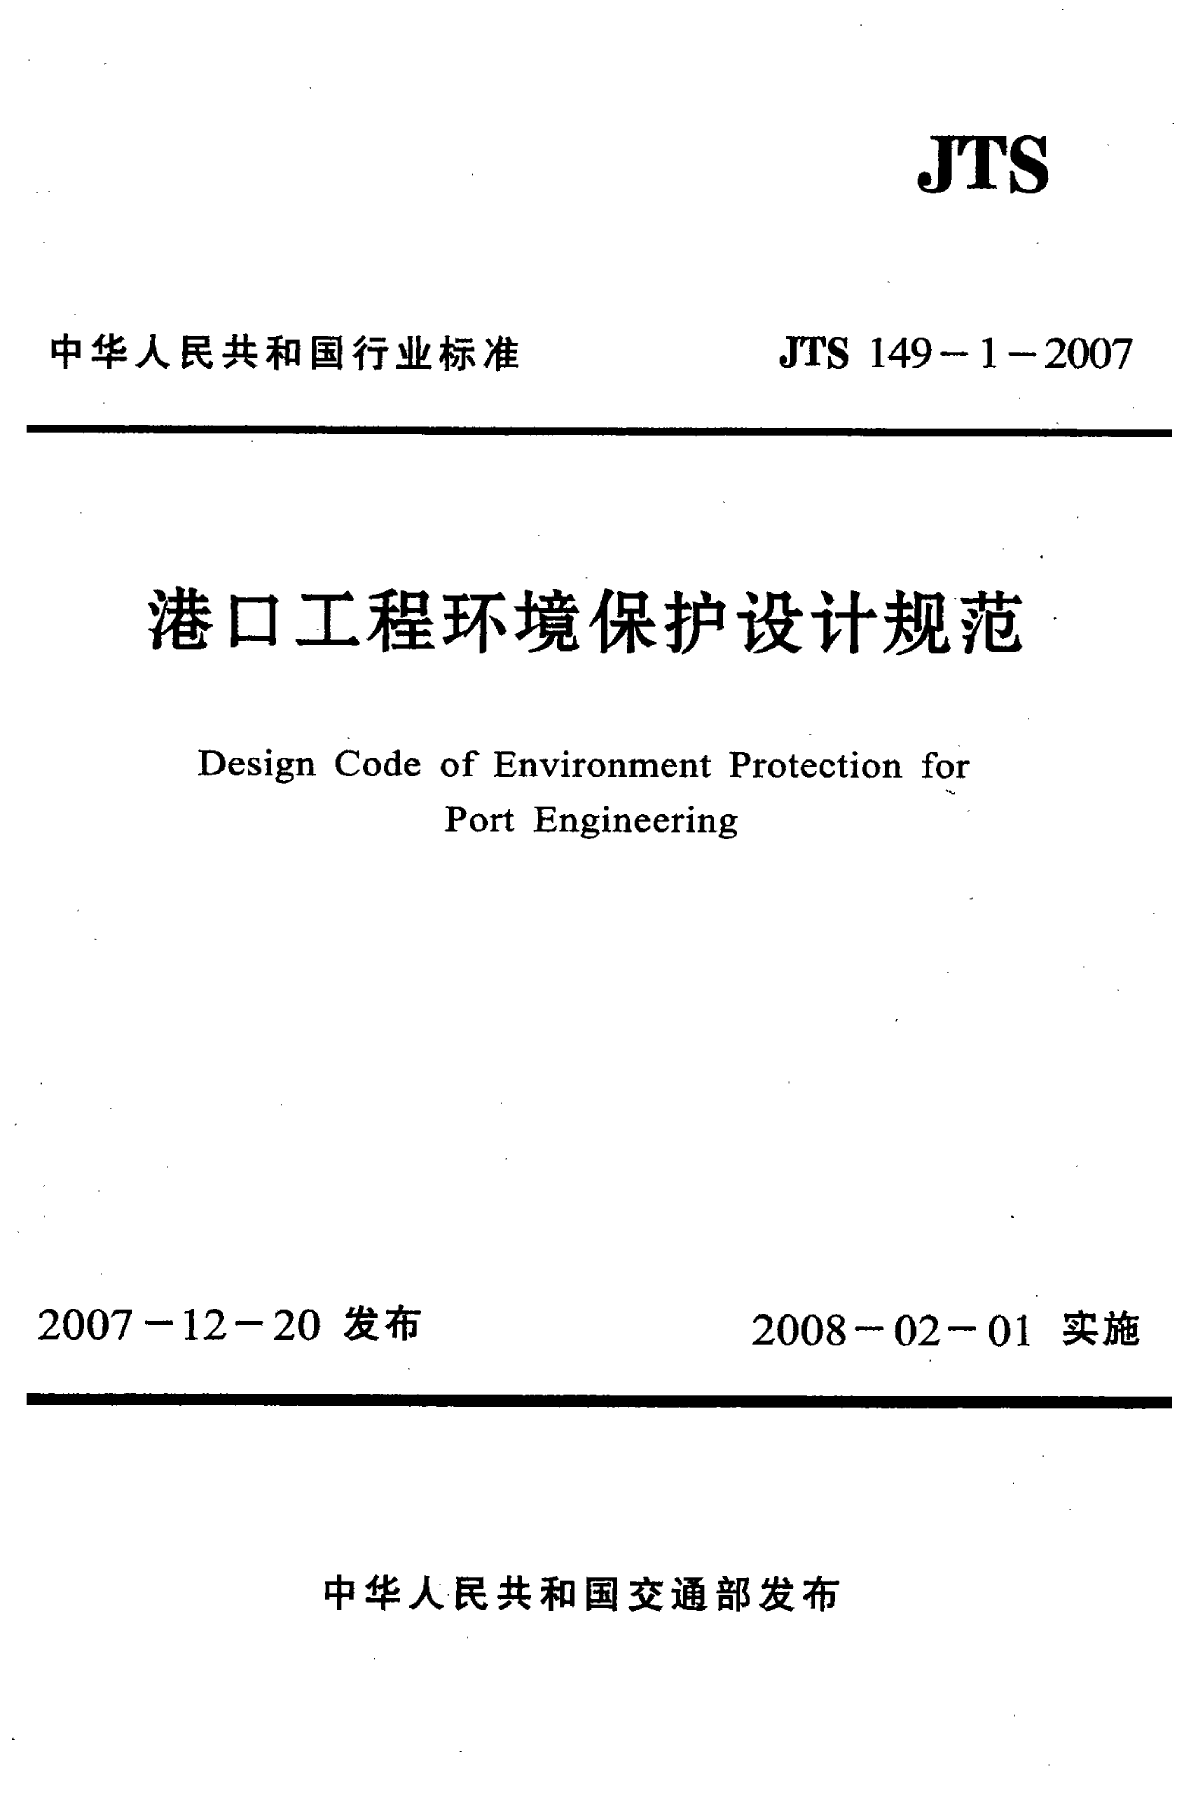 《港口工程环境保护设计规范》(JTS149-1-2007)